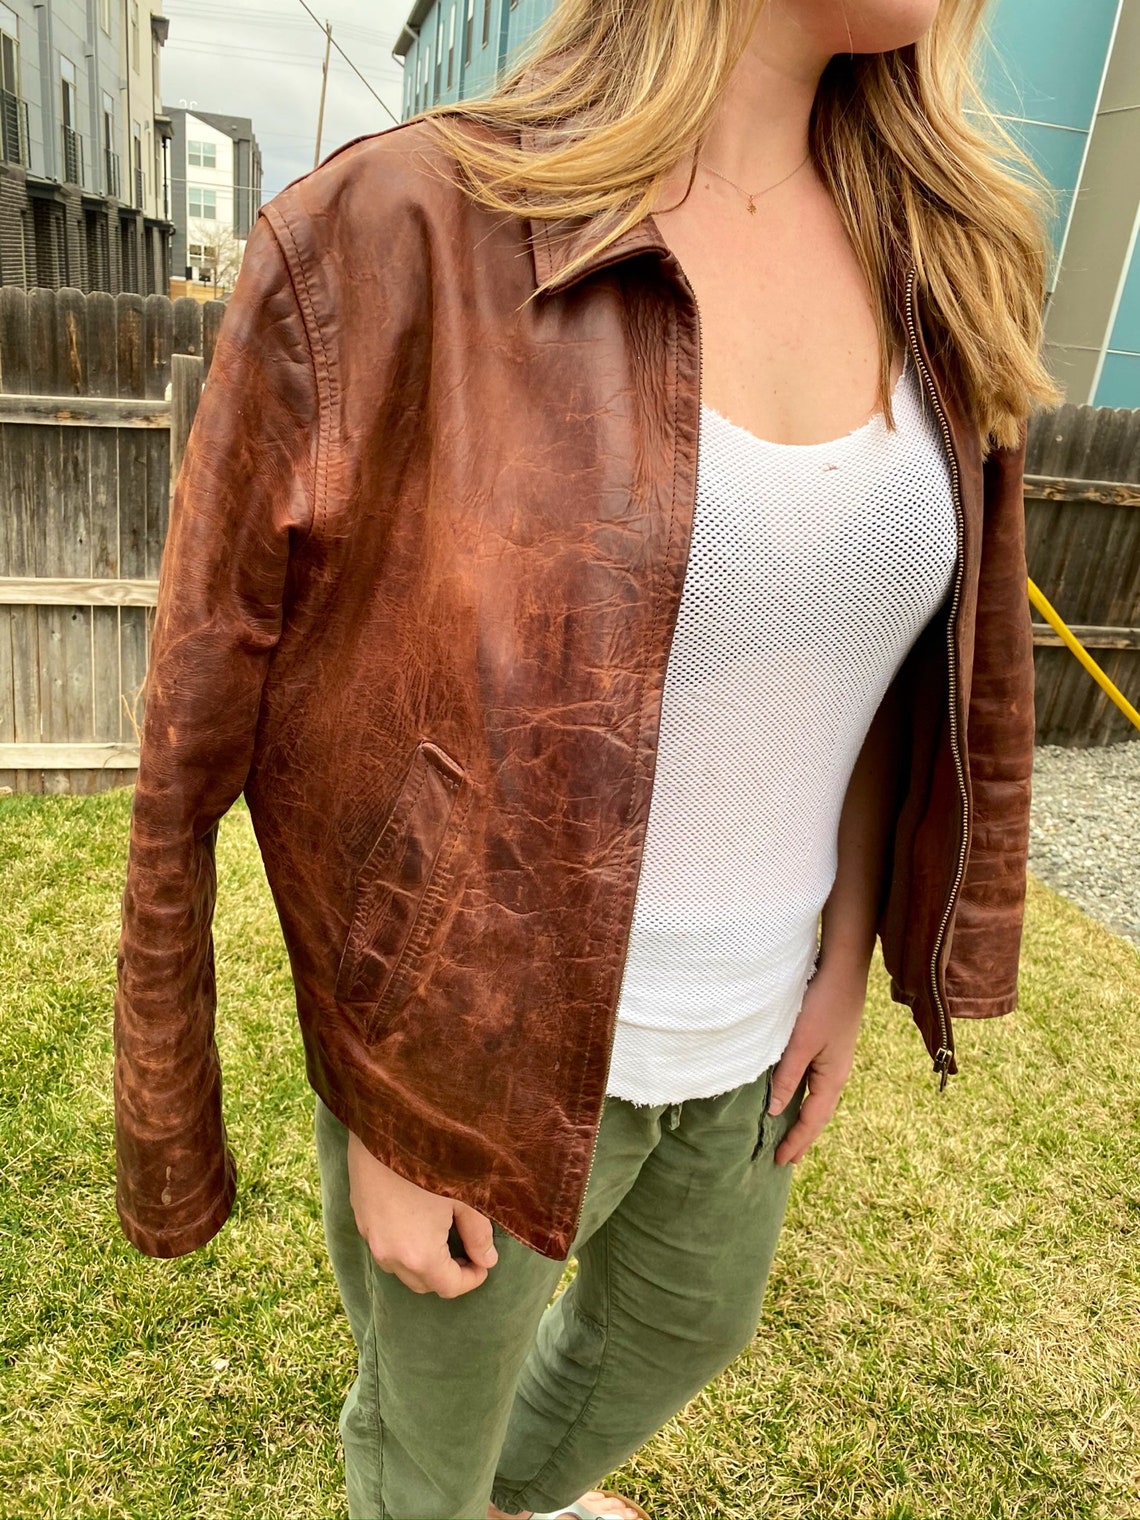 wifey leather jacket facial Xxx Pics Hd